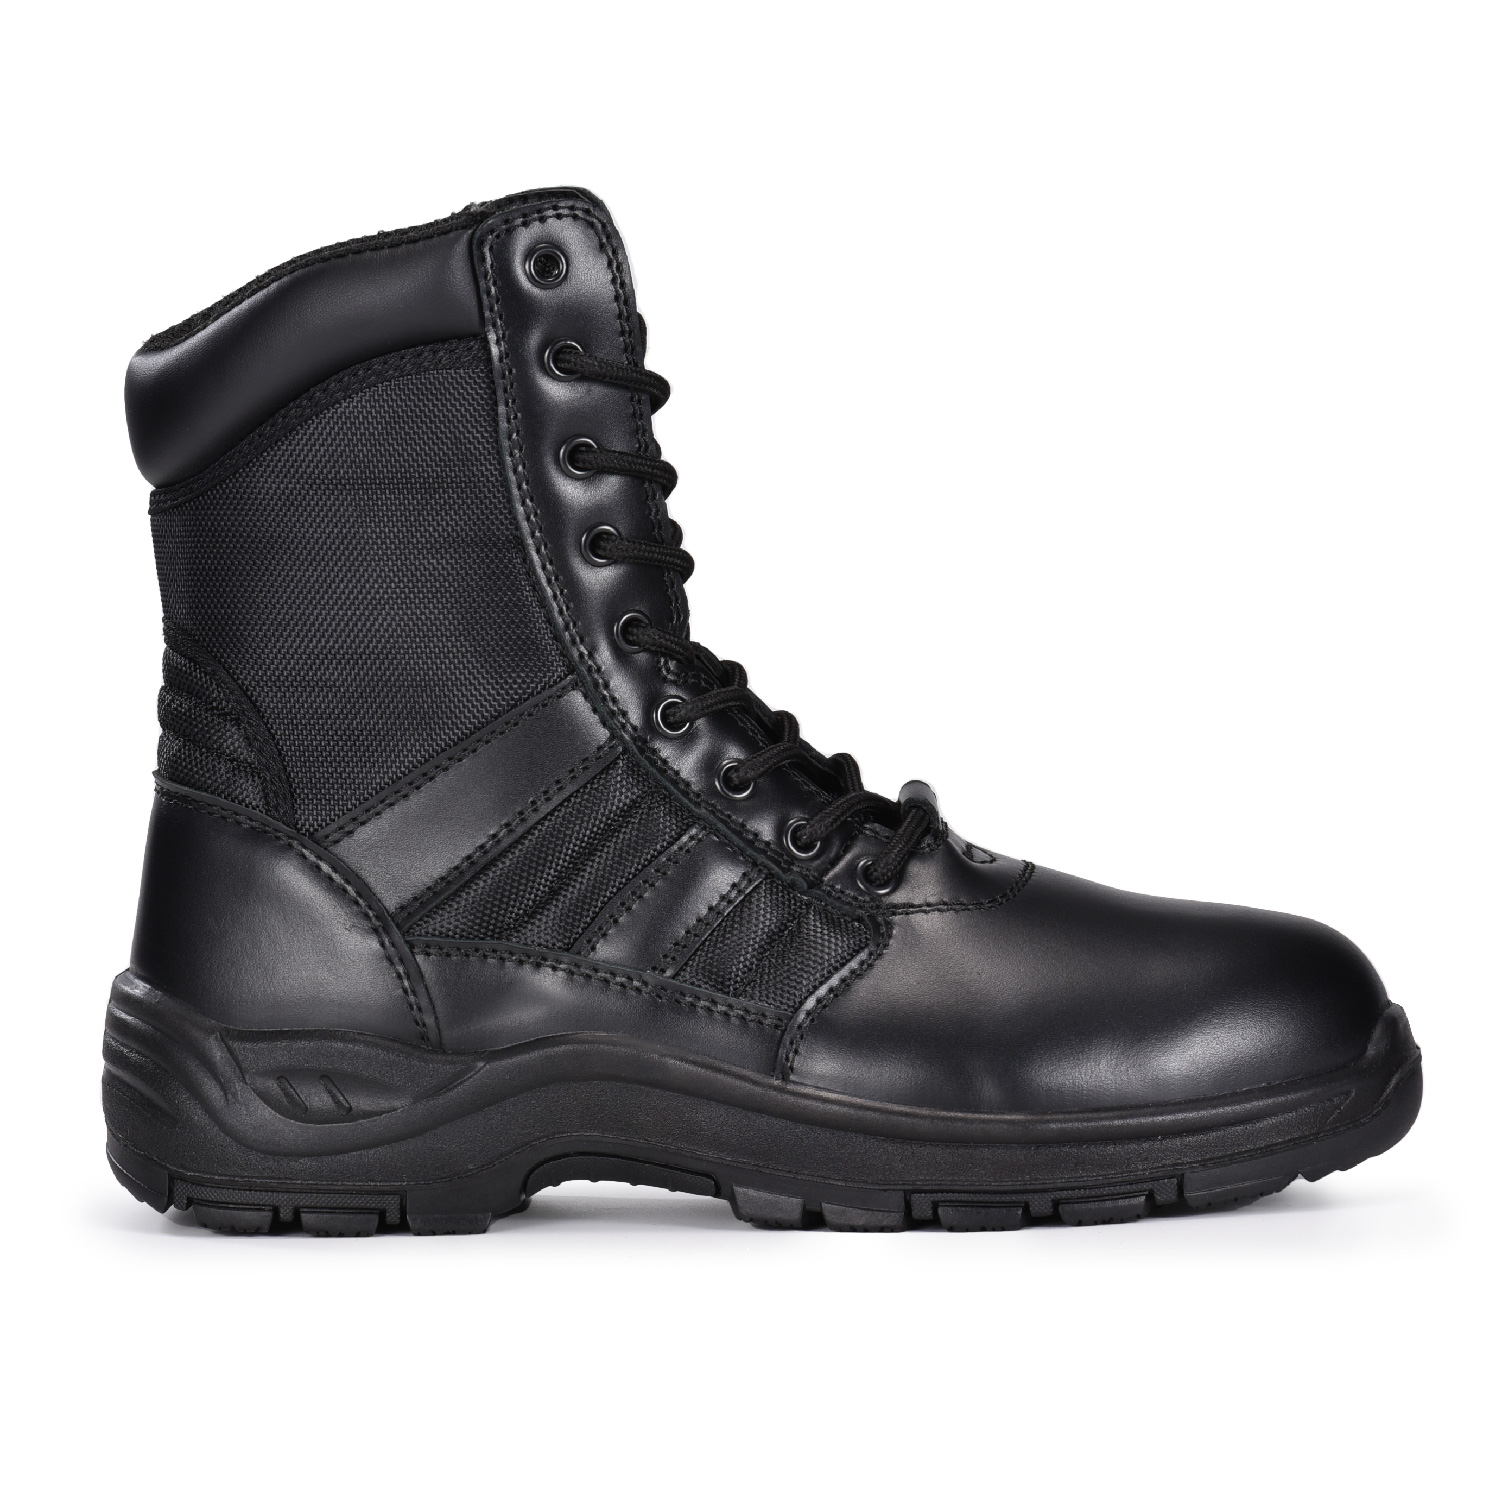 Stivali da combattimento in pelle nera da pattuglia militare/esercito per esterni o sicurezza H-9551